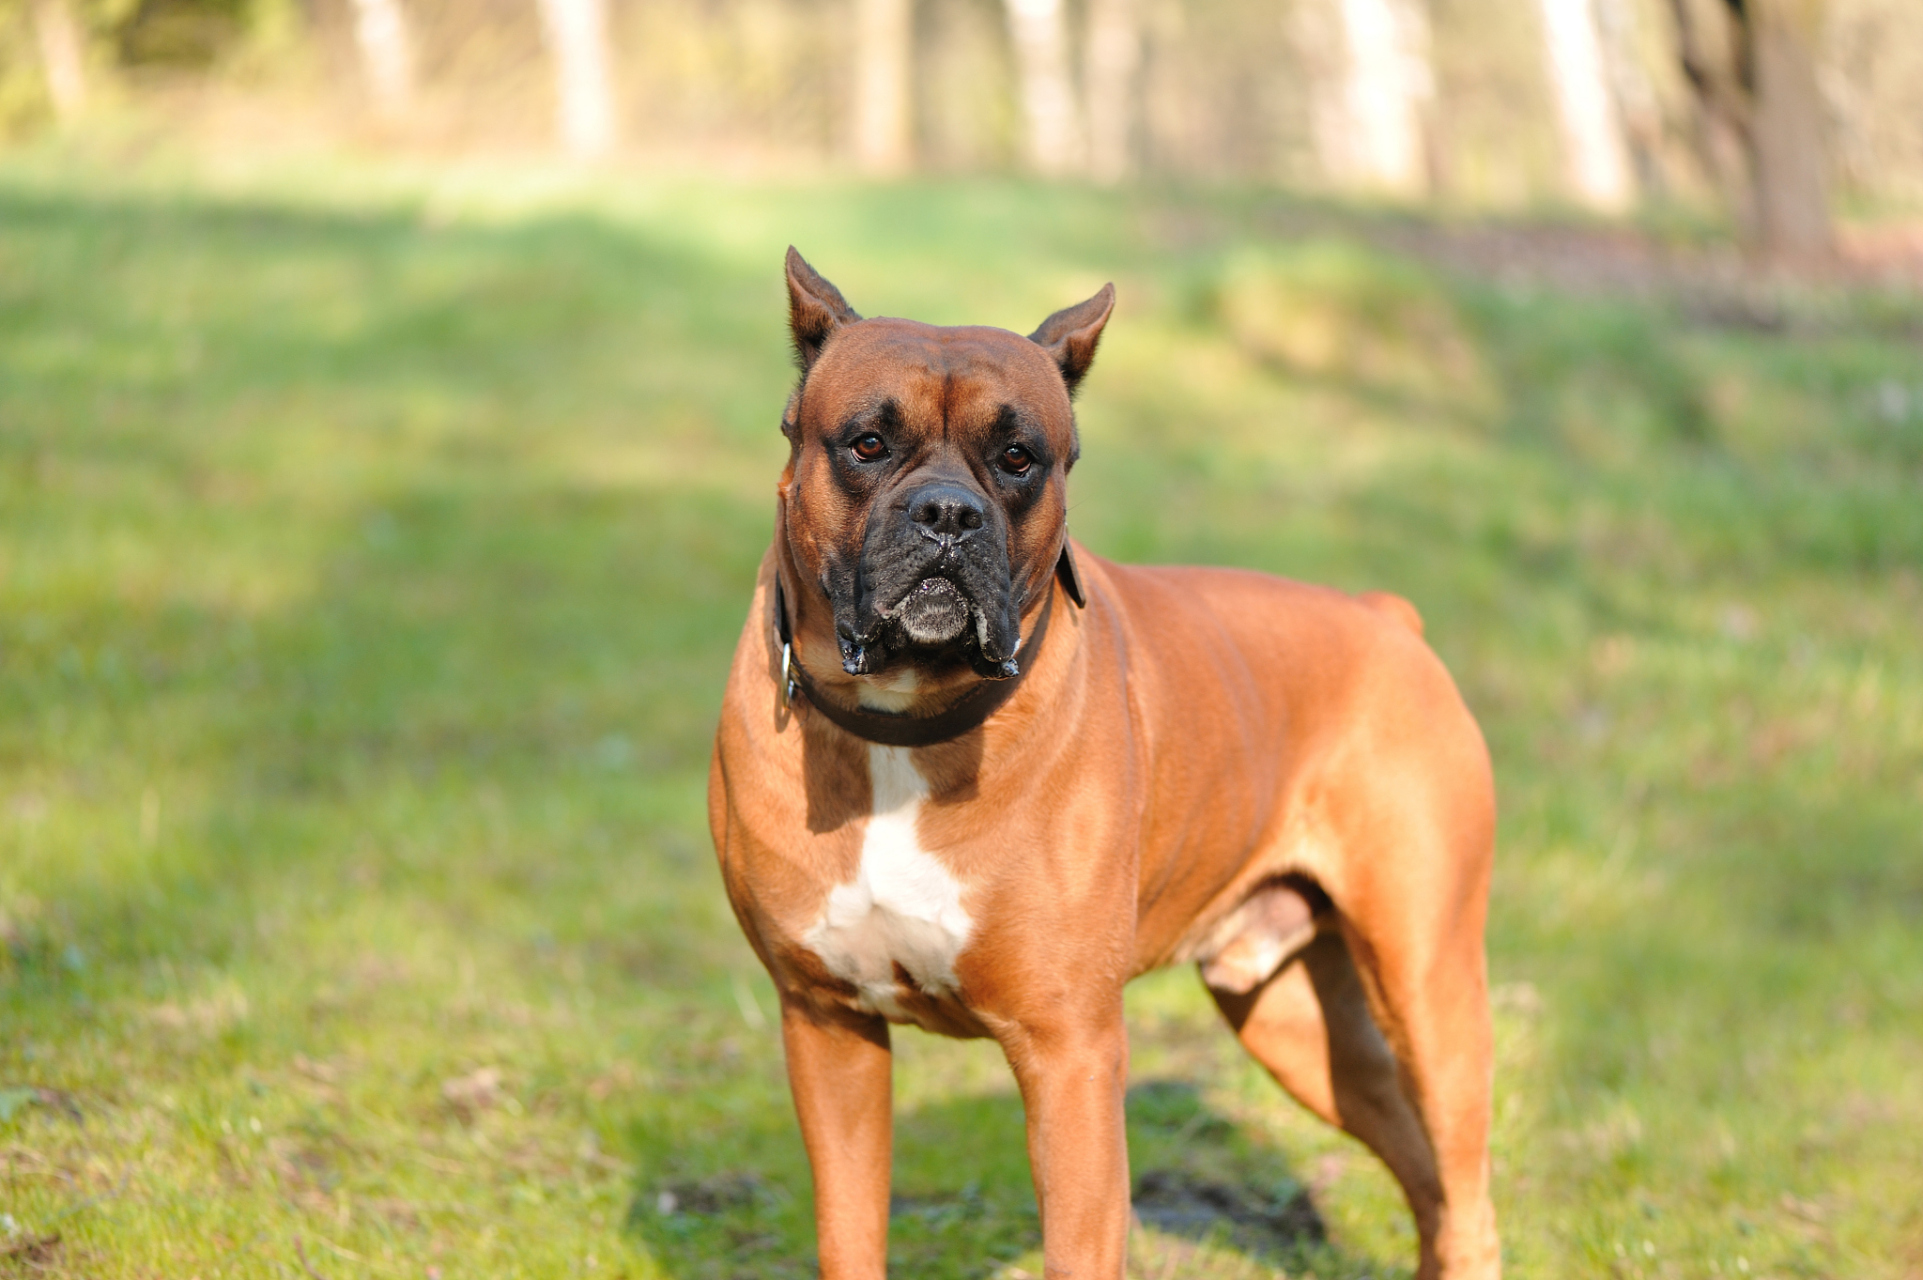 土佐犬是一种体型健壮,勇敢,忠诚的日本犬种,以其对主人忠诚,勇猛善战